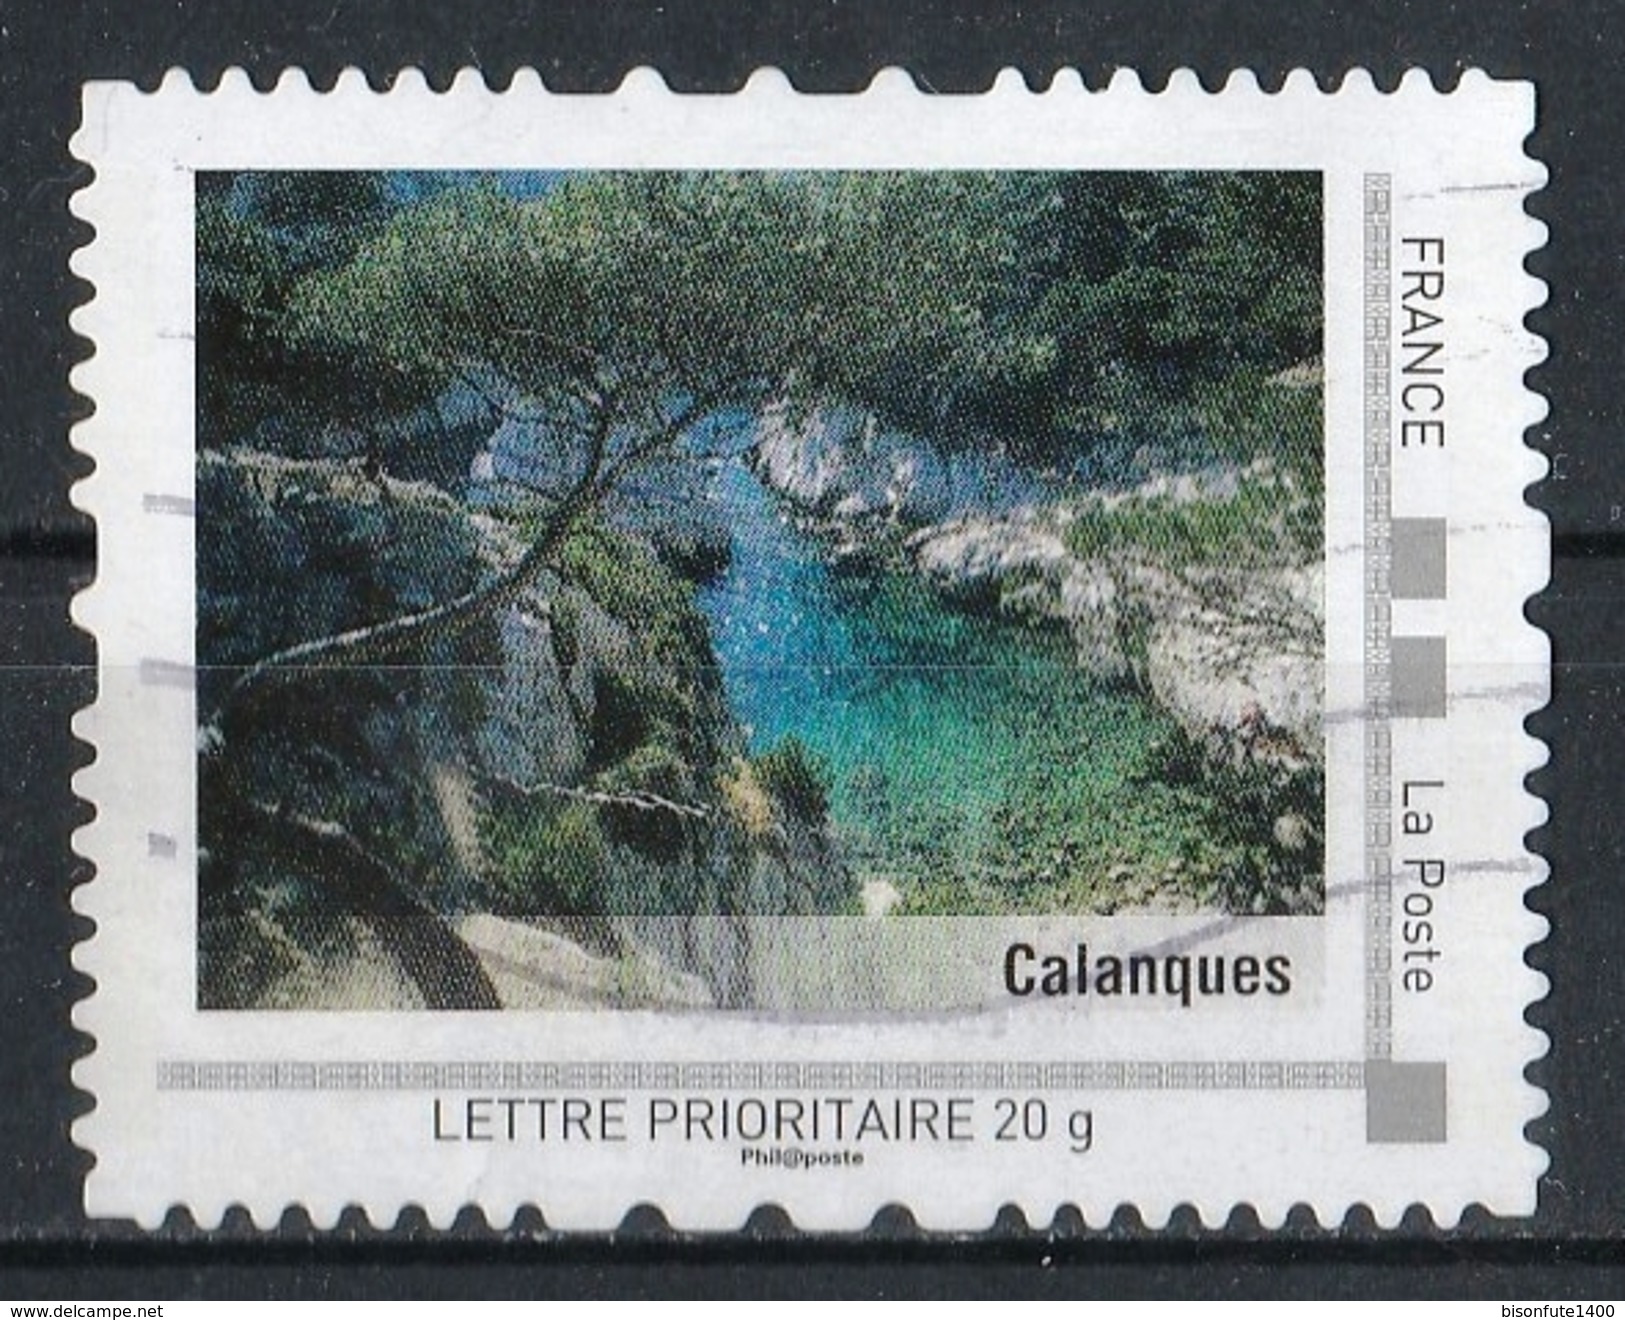 Collector Provence-Alpes-Côte D'Azur 2009 : Calanques - Collectors